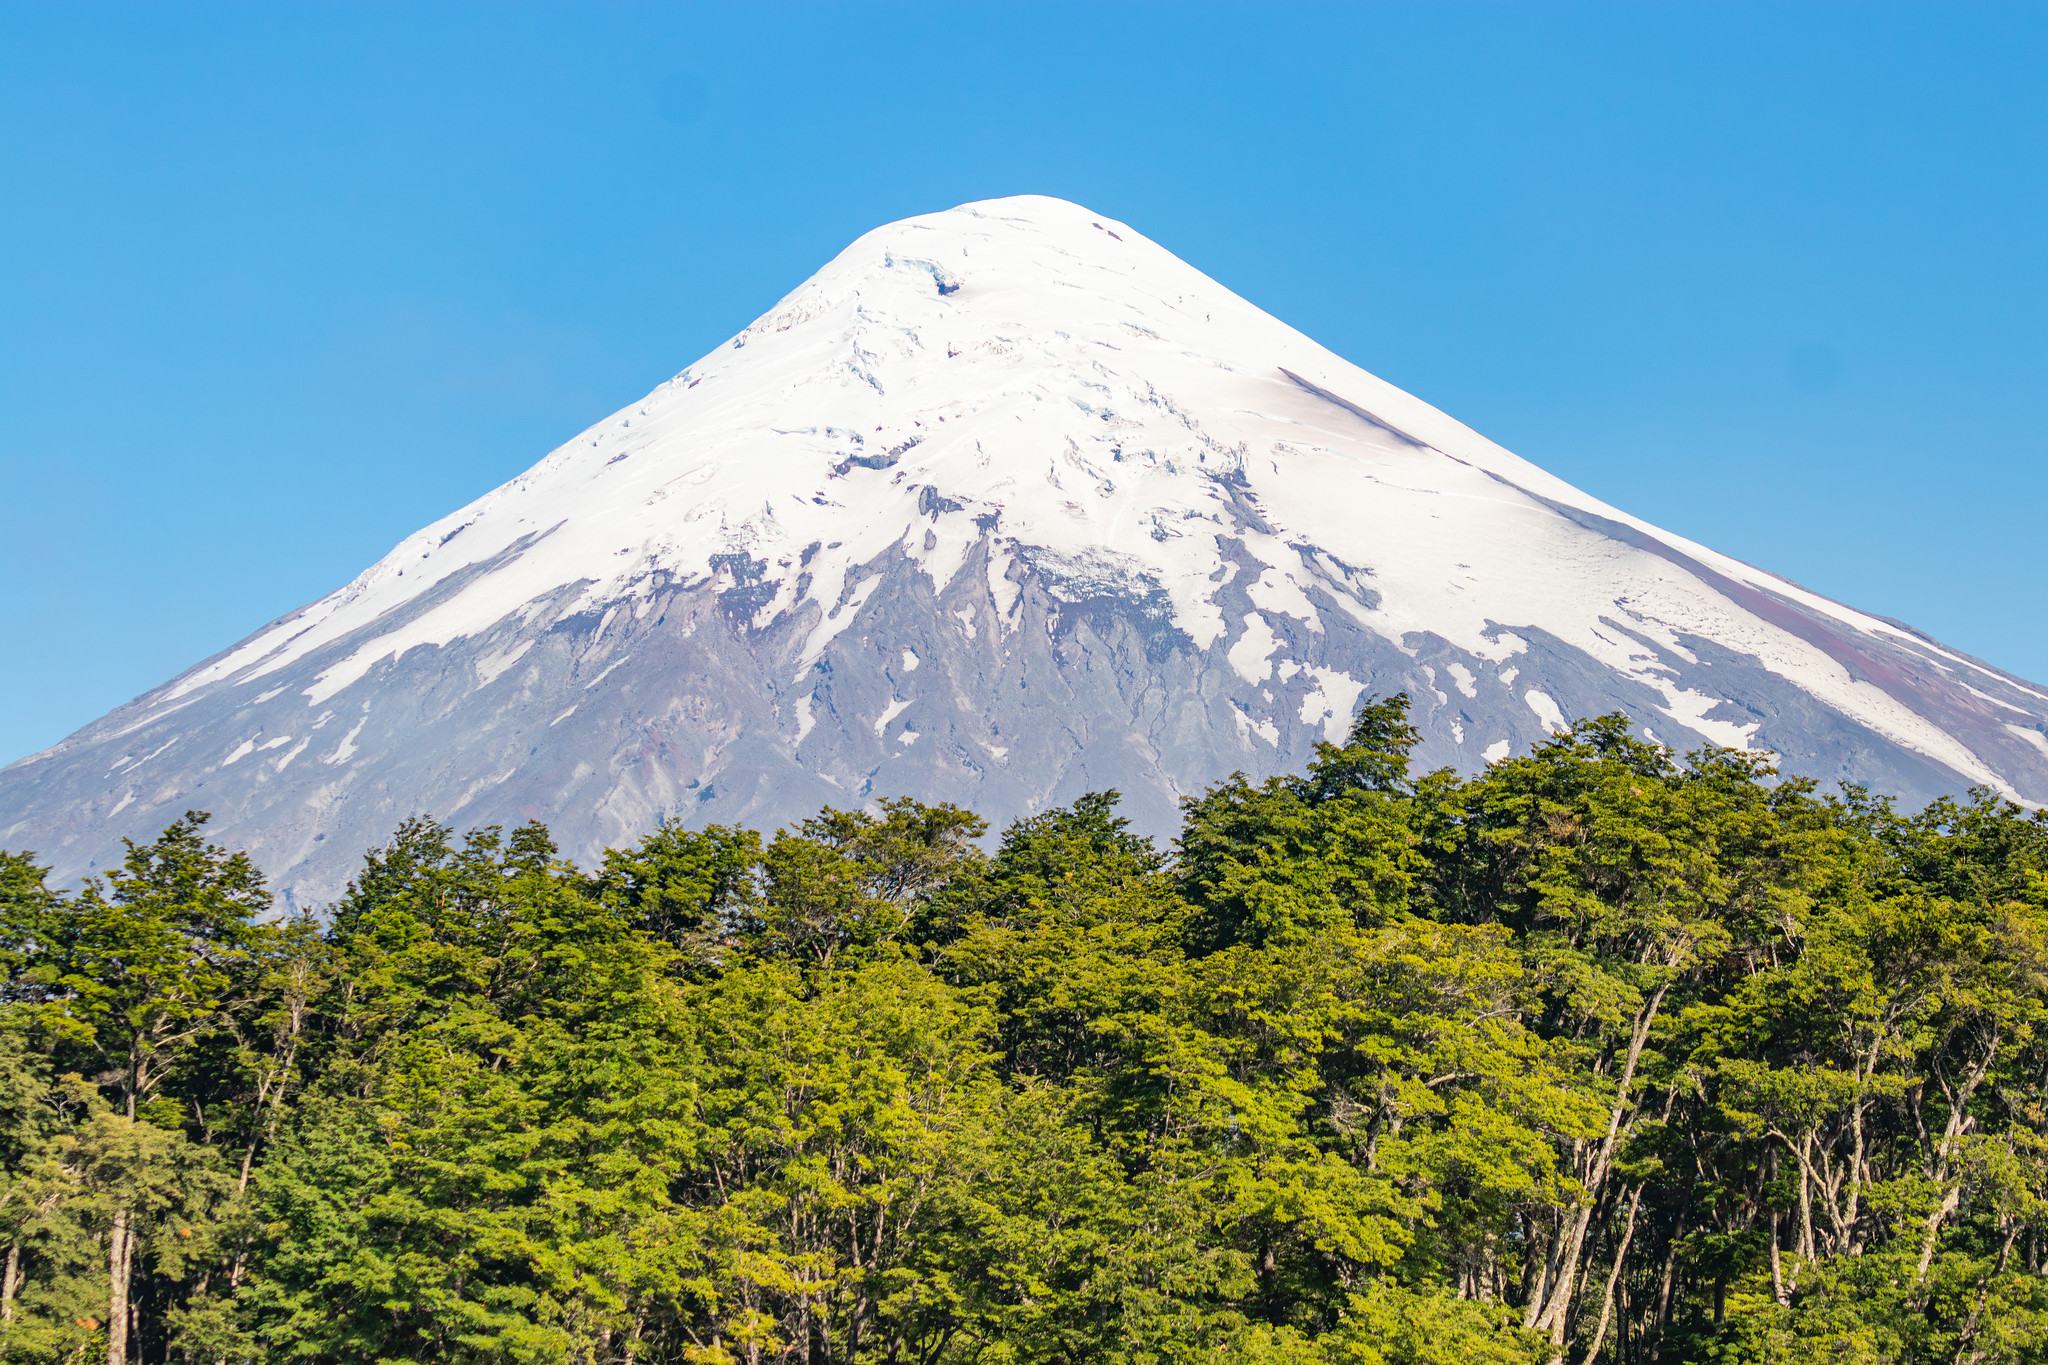 Le dôme enneigé du volcan Osorno